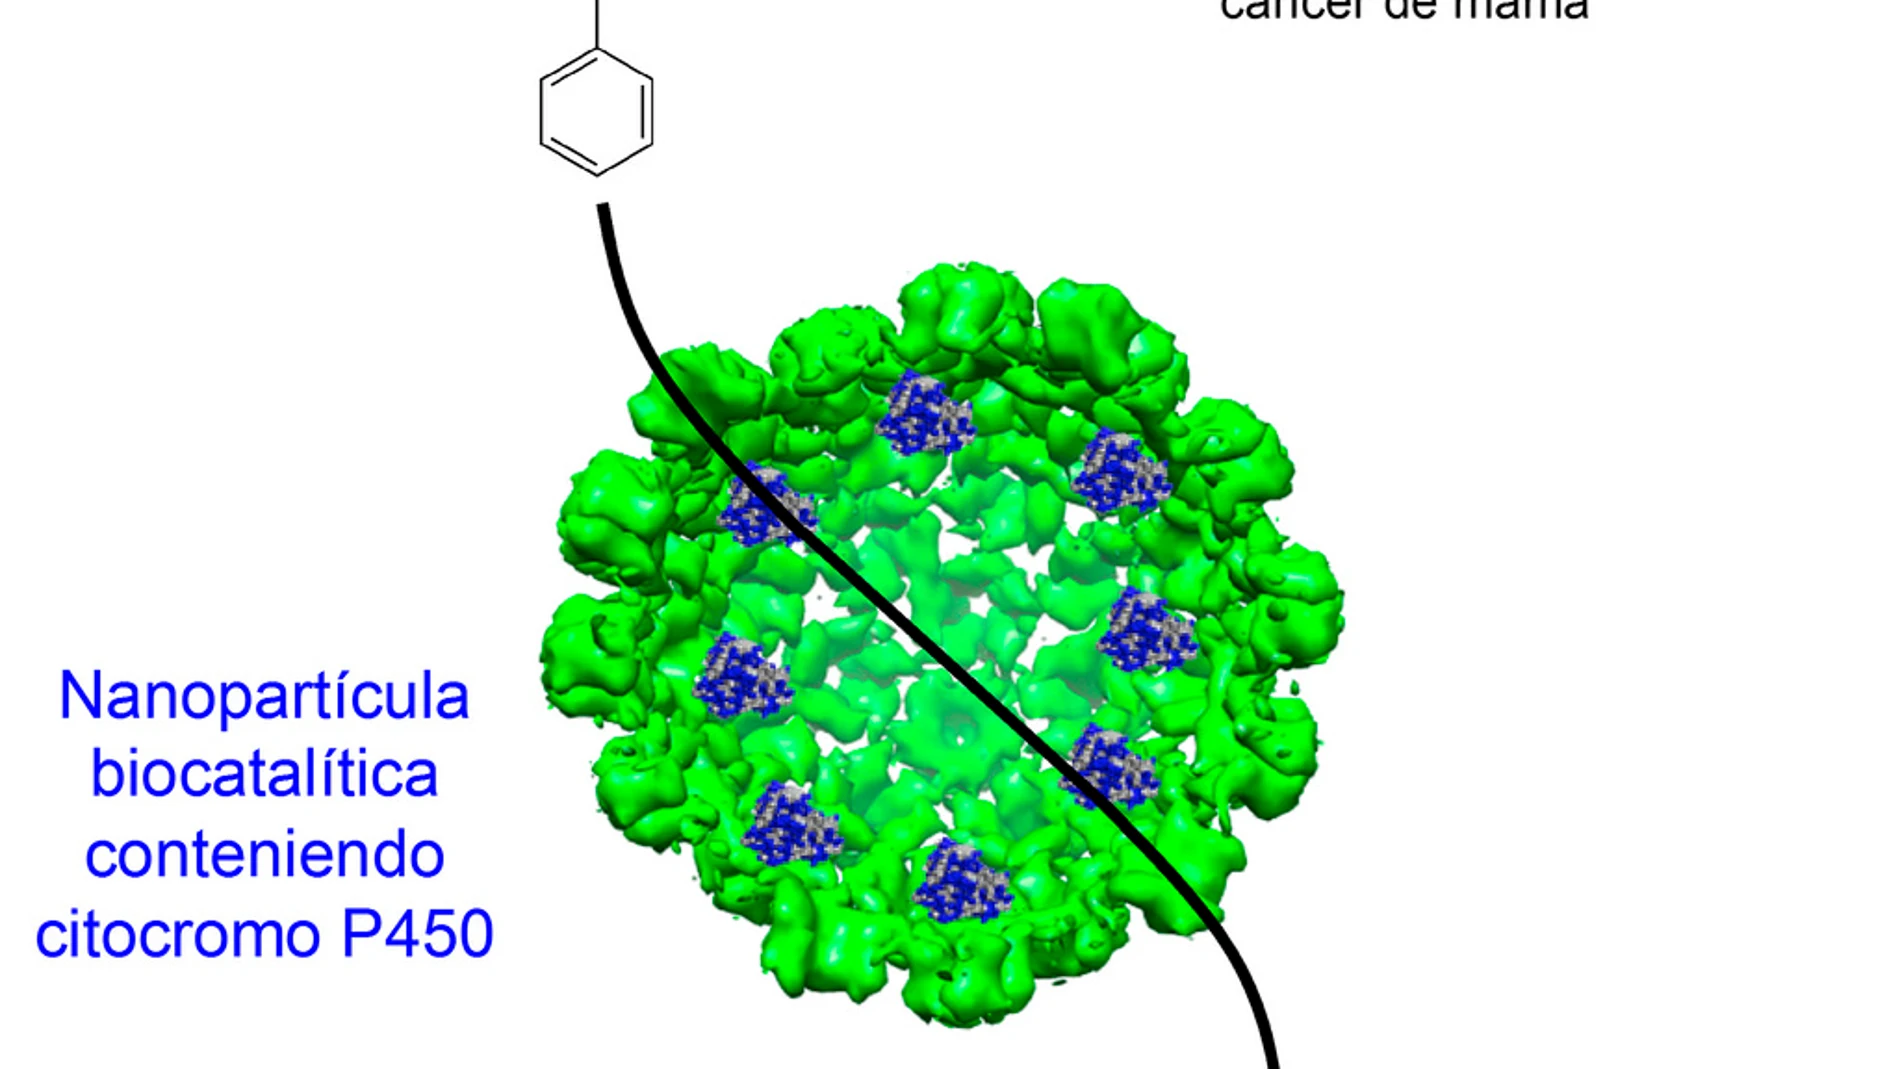 Nanopartícula biocatalítica que contiene citocromo